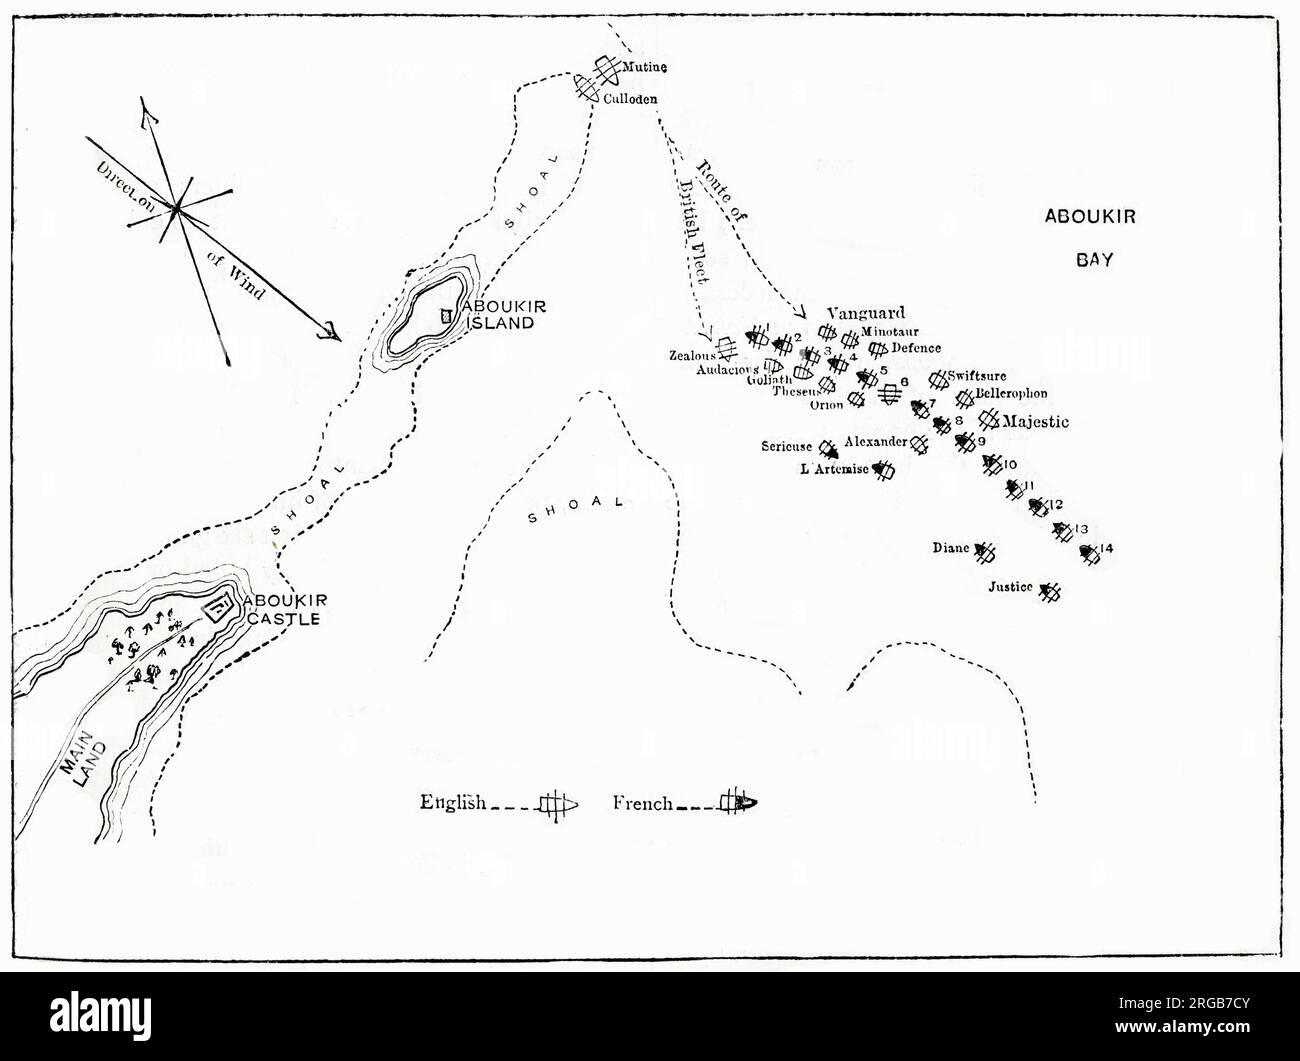 Karte, Nilschlacht (Schlacht von Aboukir Bay), Ägypten, ein Marineschlacht zwischen den Briten (geführt von Nelson) und den Franzosen, 1-3. August 1798. Stockfoto